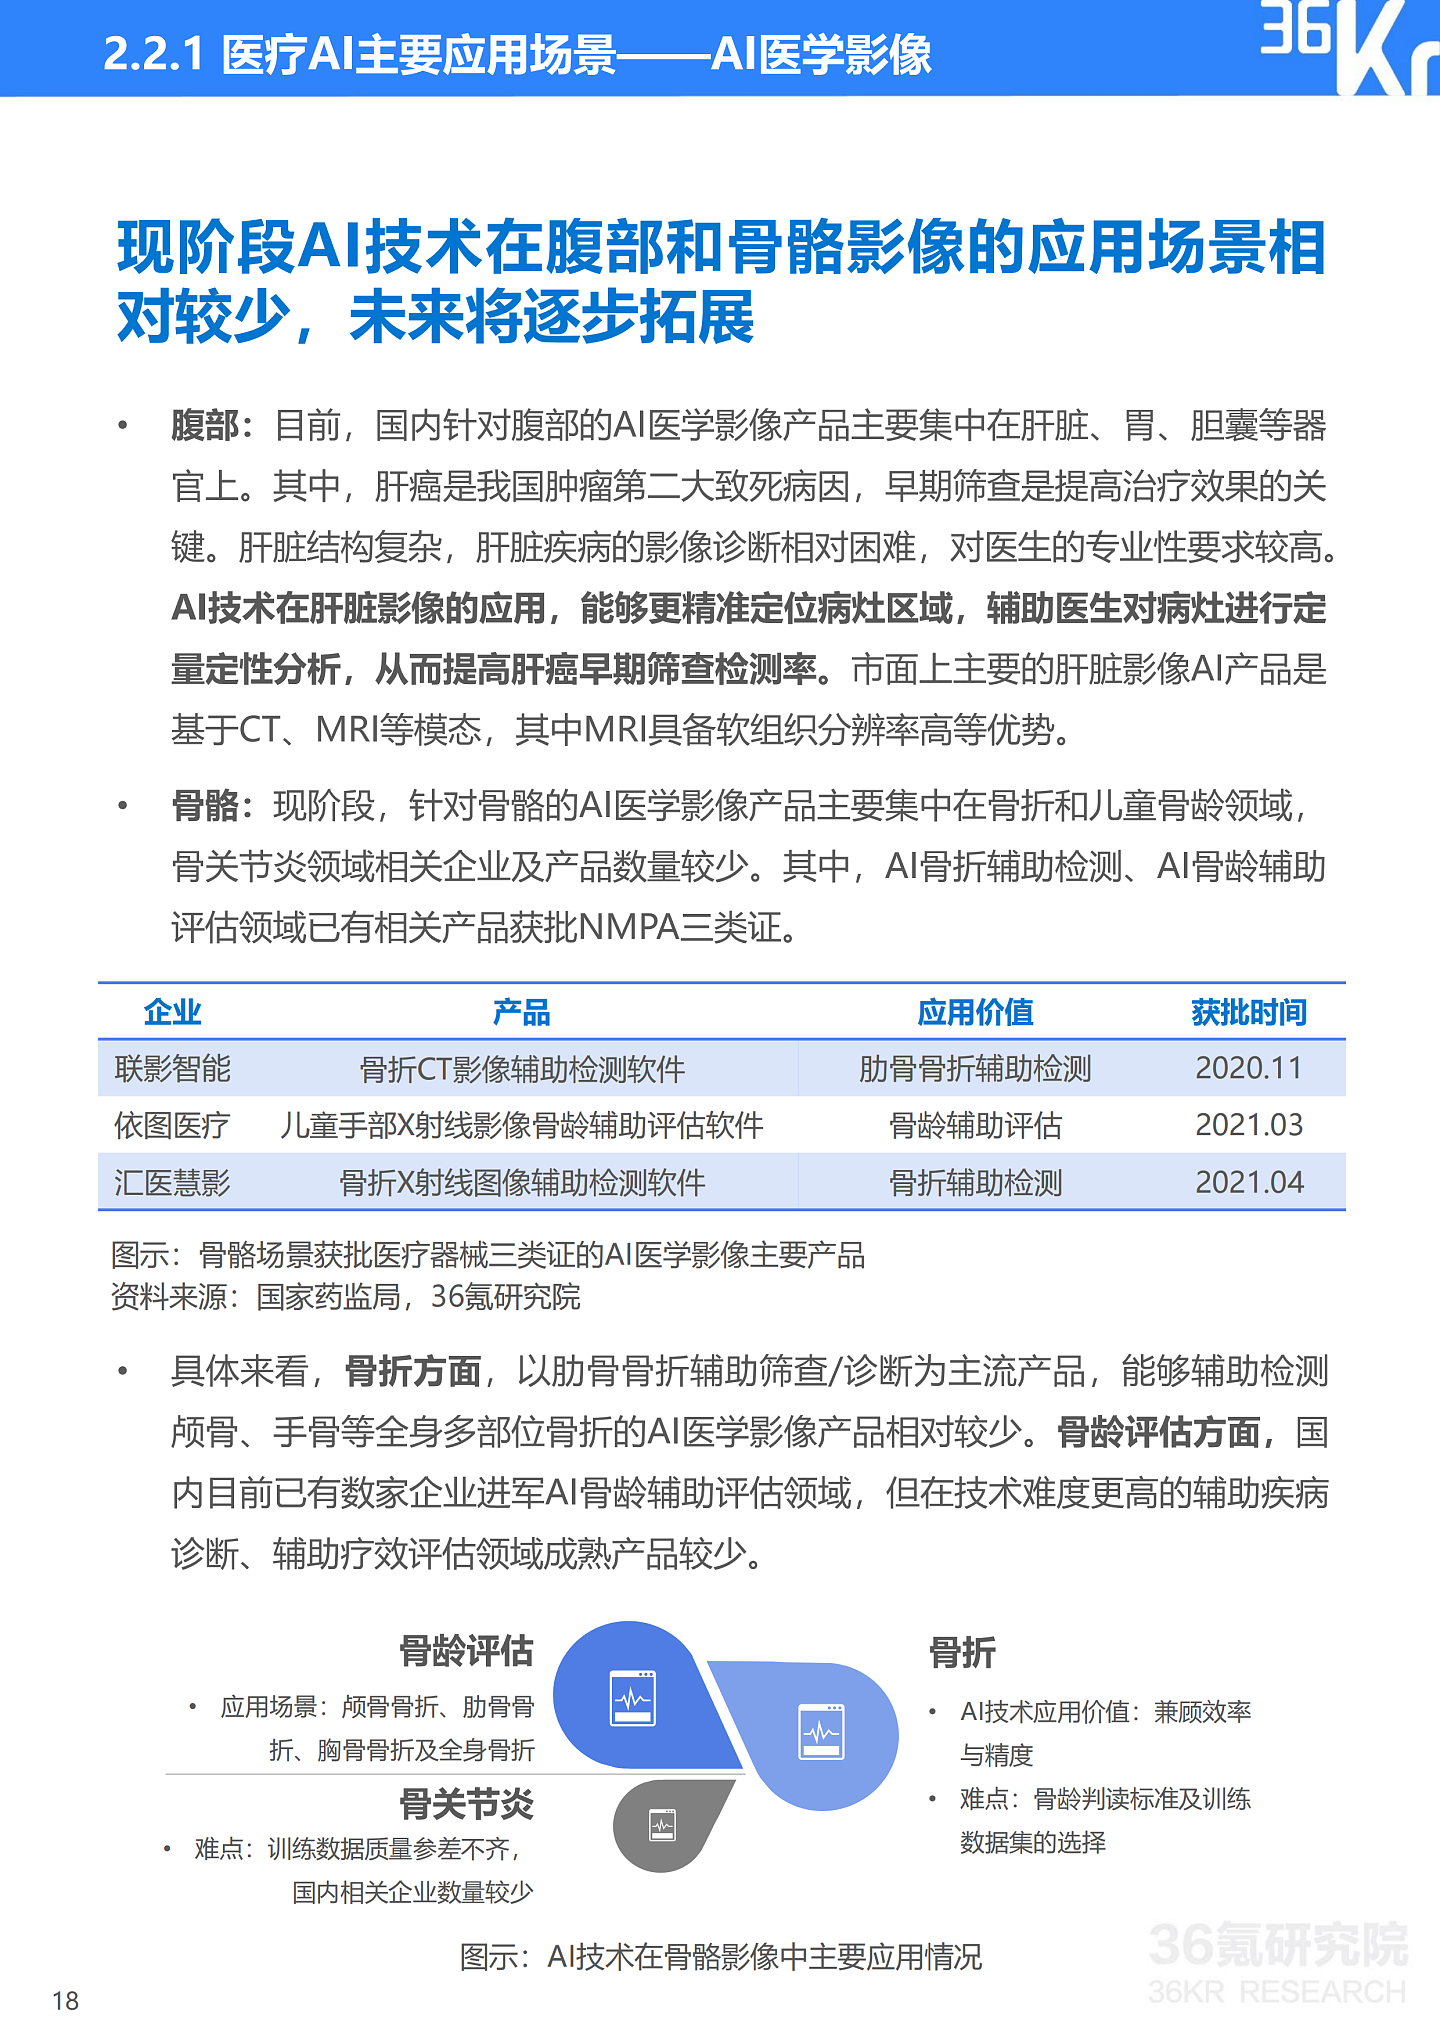 36氪研究院 | 2021年中国医疗AI行业研究报告 - 21